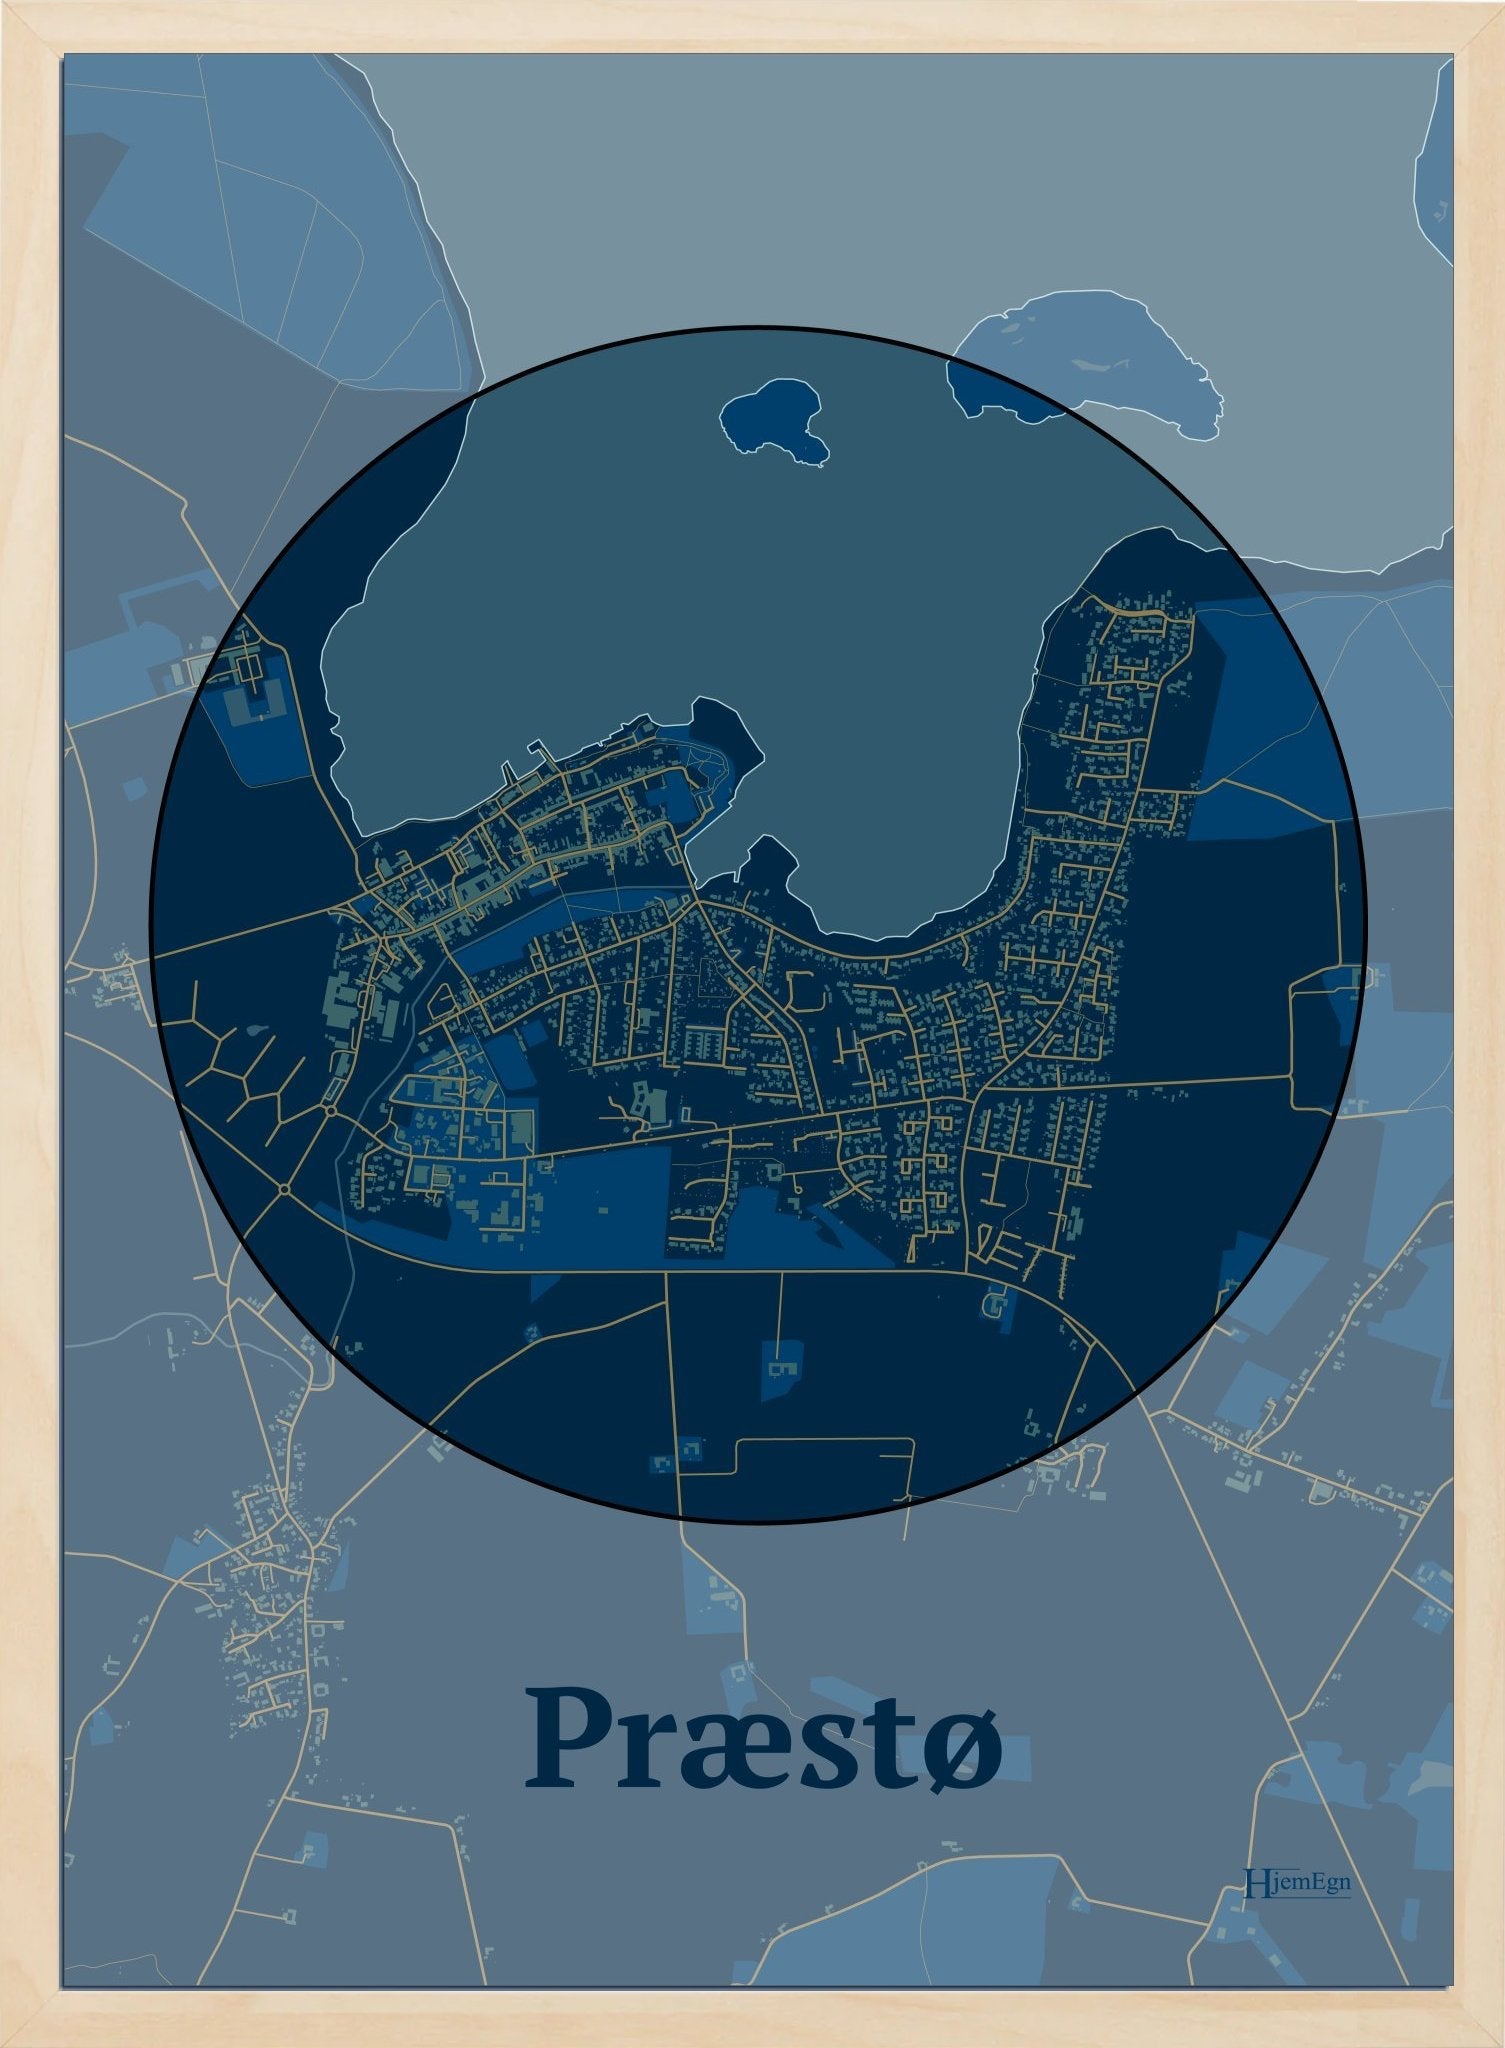 Præstø plakat i farve mørk blå og HjemEgn.dk design centrum. Design bykort for Præstø